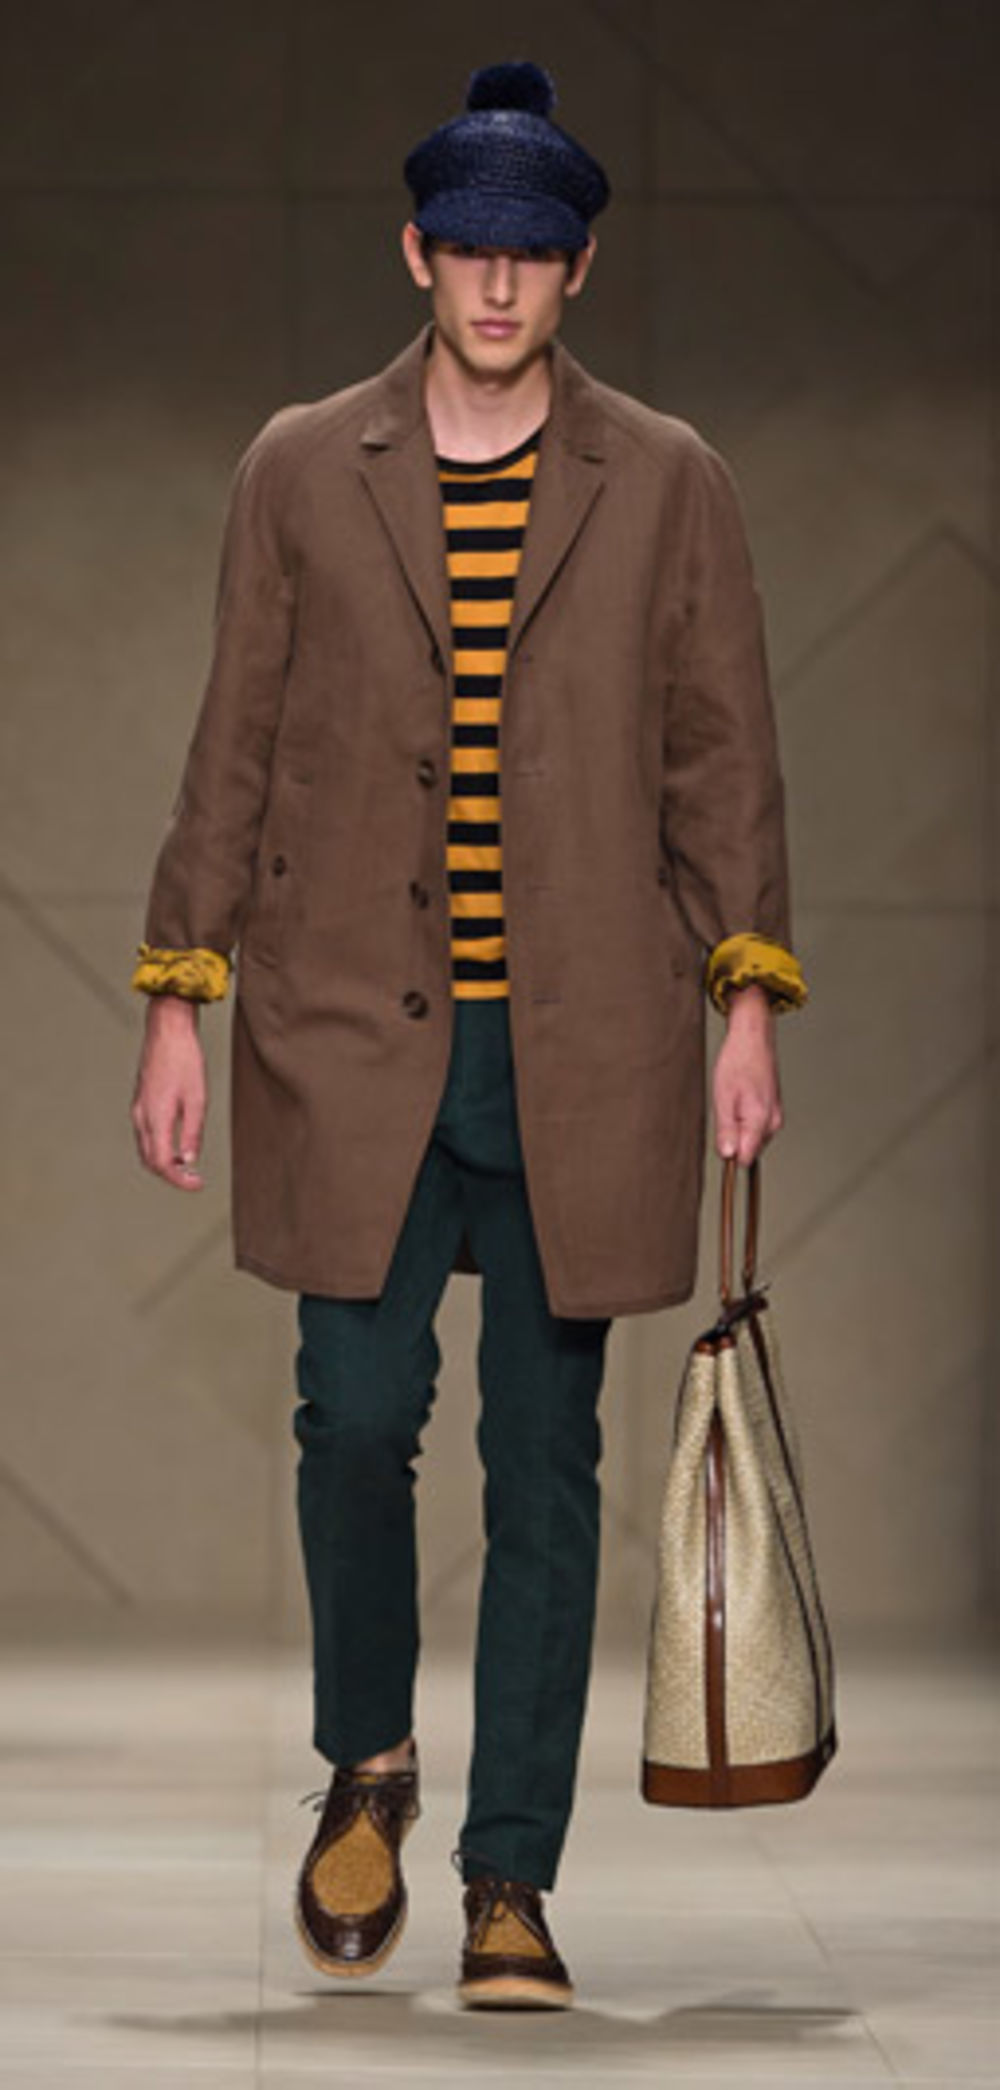 Nova kolekcija modnog brenda Burberry namenjena muškarcima za proleće - leto 2012. godine predstavljena je u Milanu na muškoj Nedelji mode. Najnoviji modeli bogati su koloritom, a kao osnovne boje korišćene su plava i već prepoznatljiva braon nijansa. Svi mode